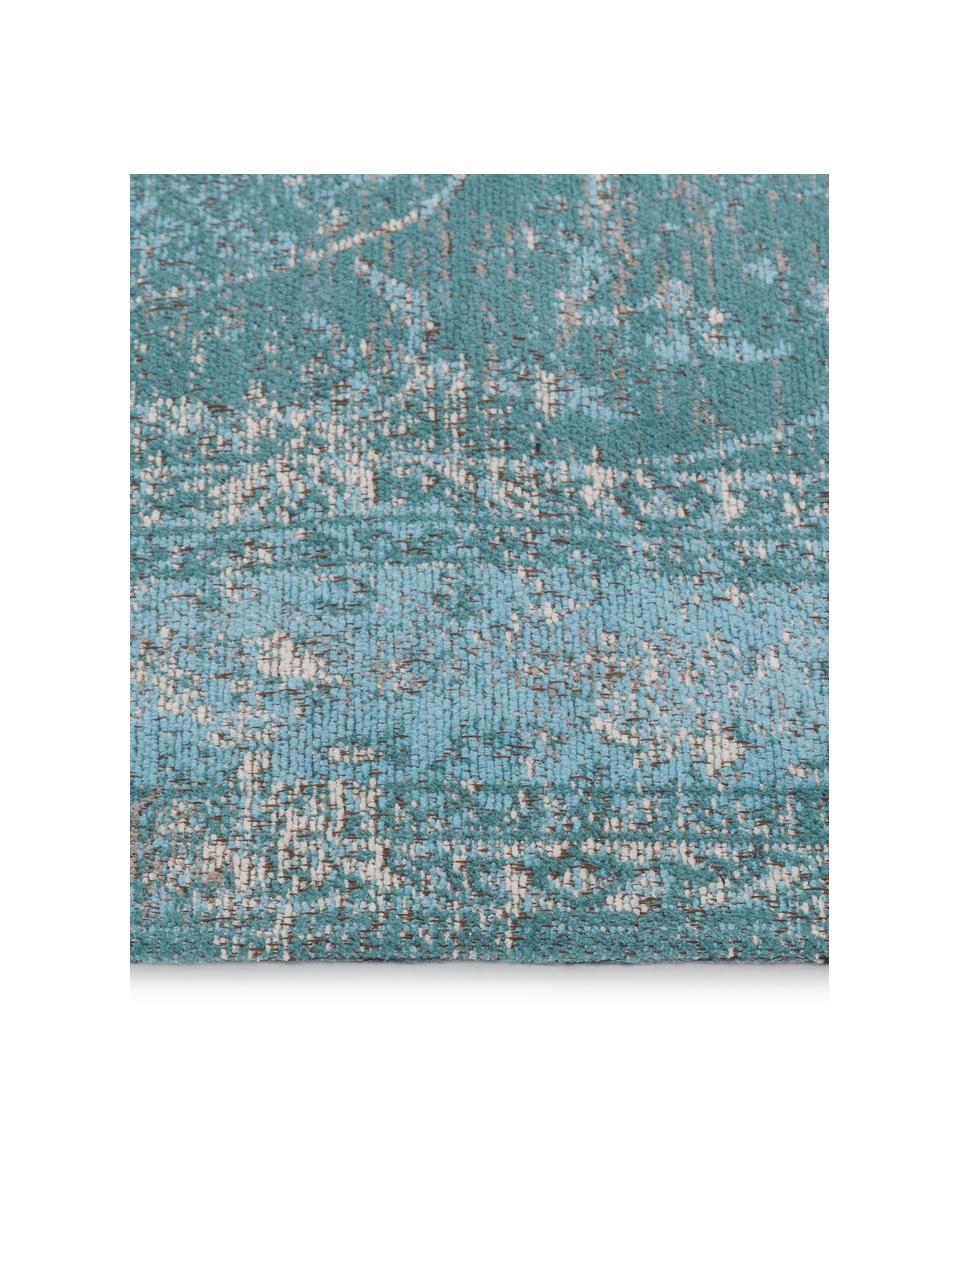 Dywan szenilowy w stylu vintage Palermo, Turkusowy, jasny niebieski, we wzór, S 120 x D 180 cm (Rozmiar S)